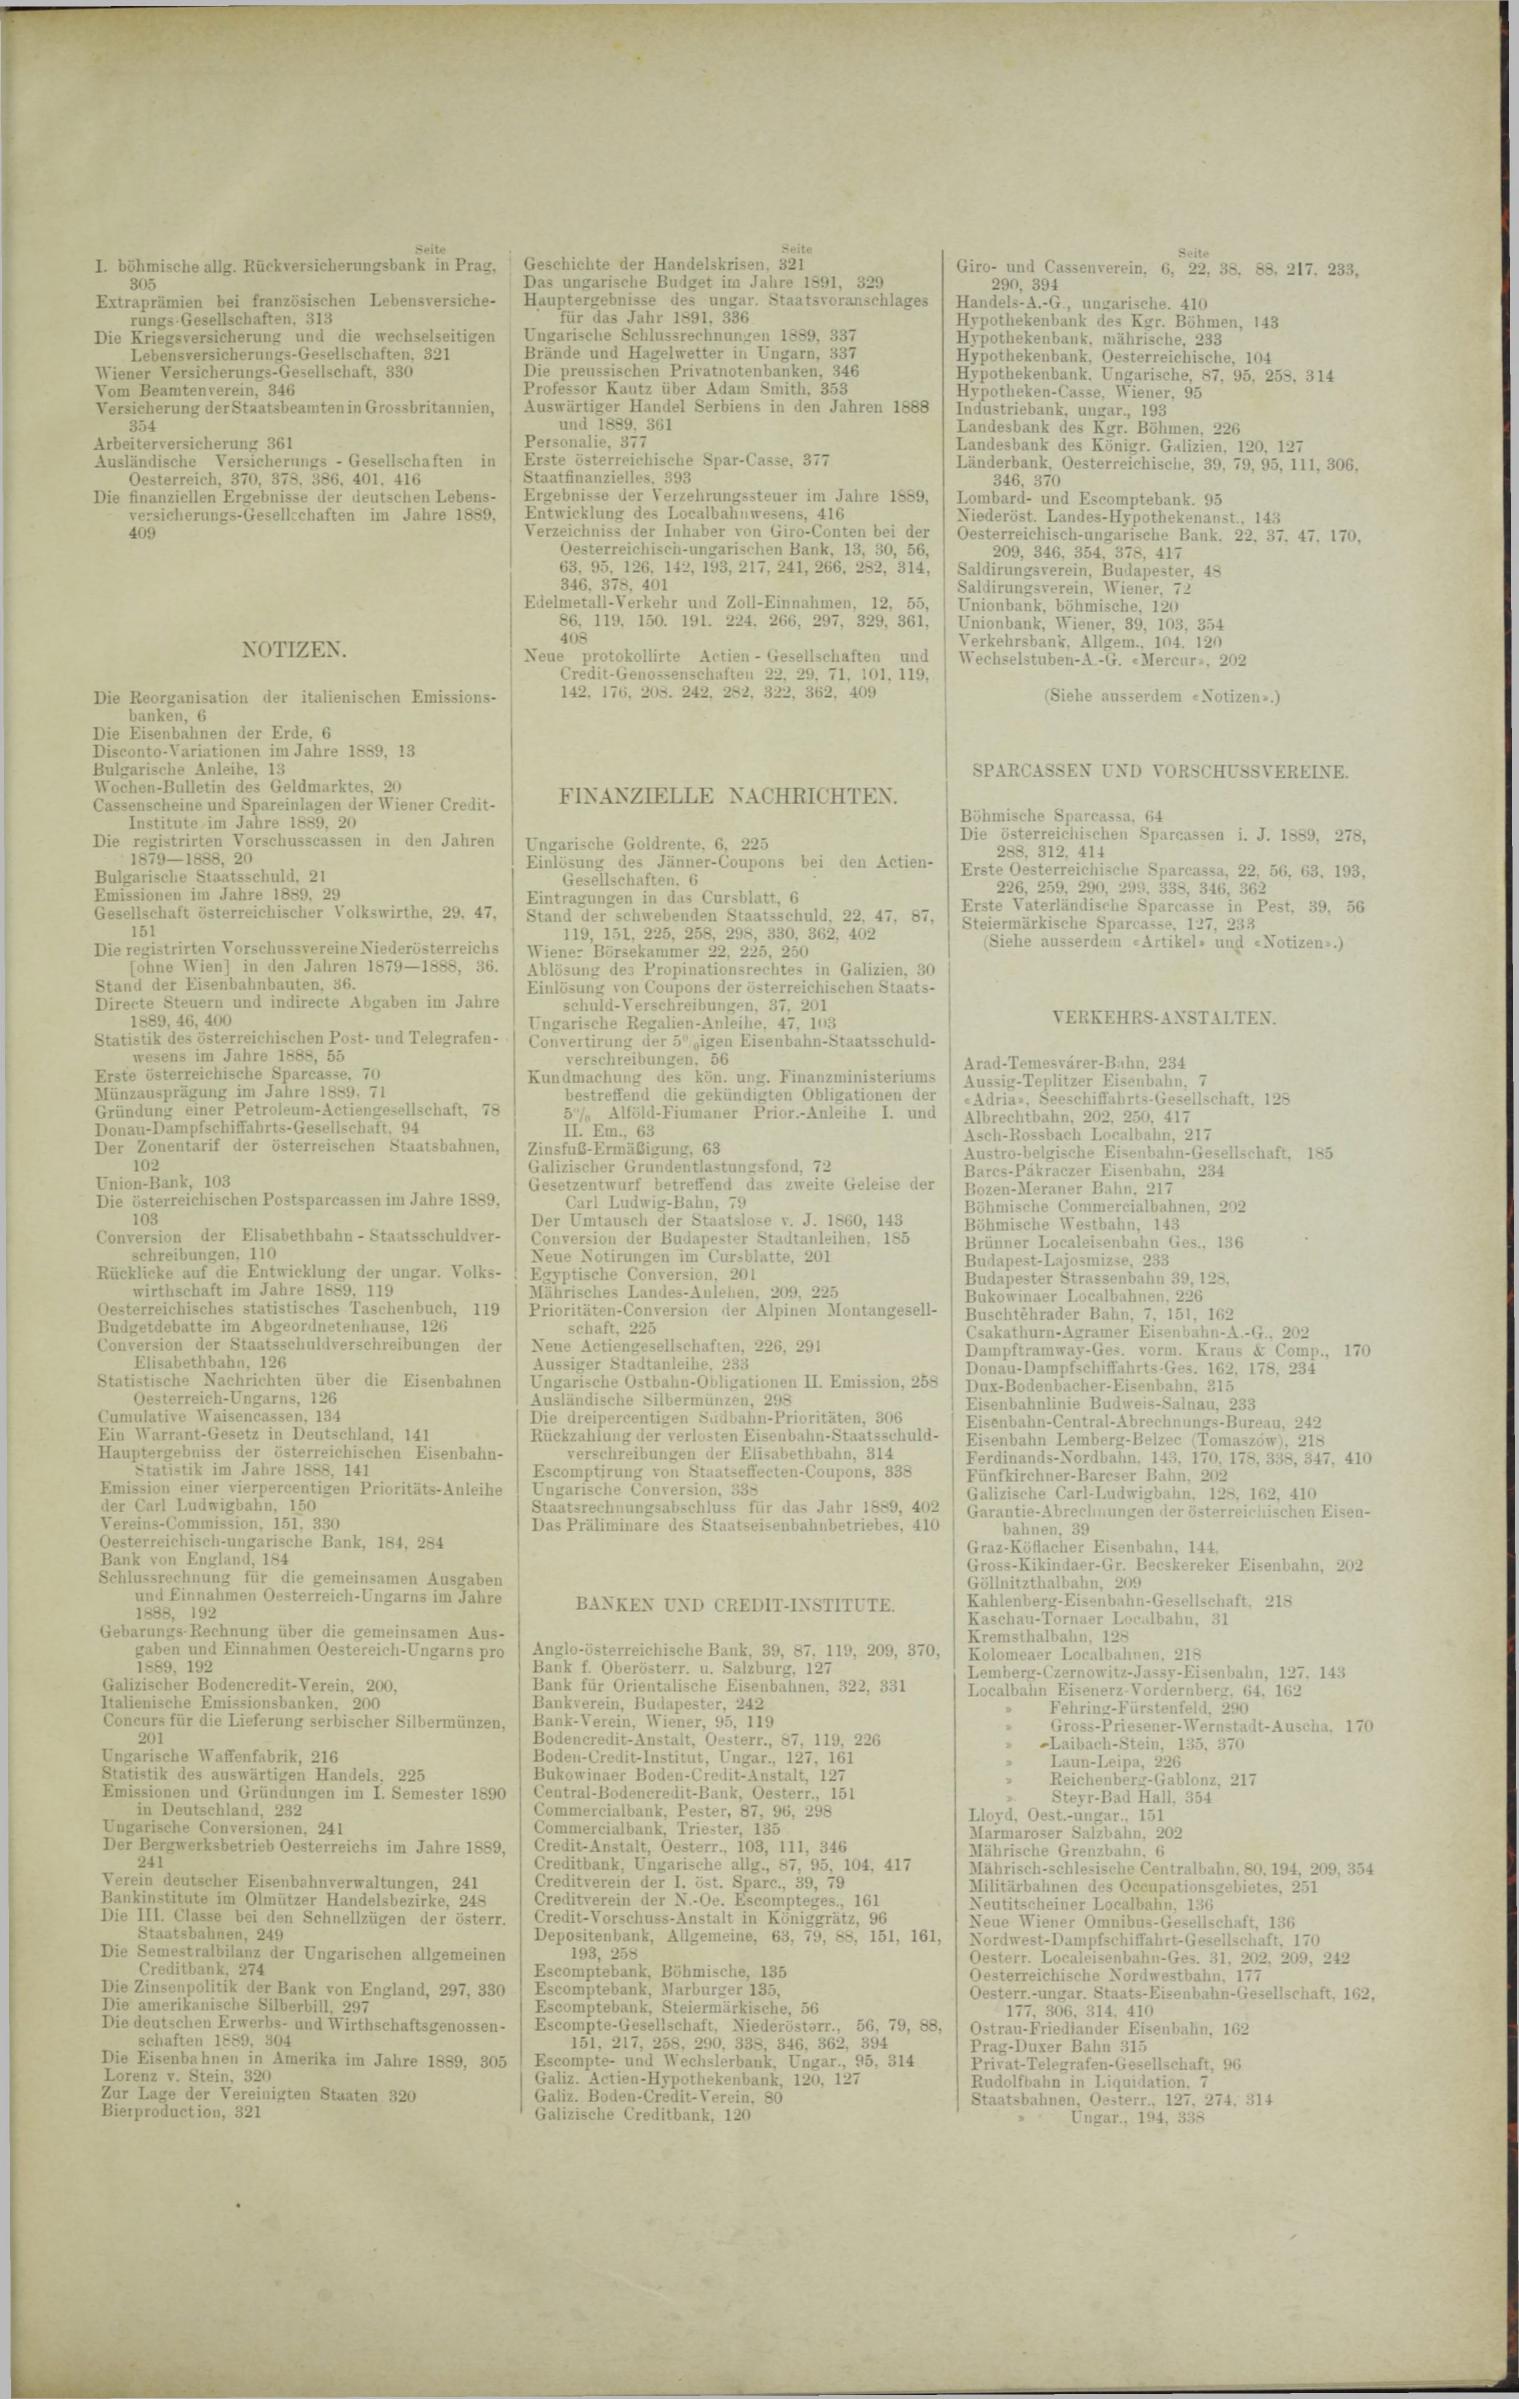 Der Tresor 23.10.1890 - Seite 11